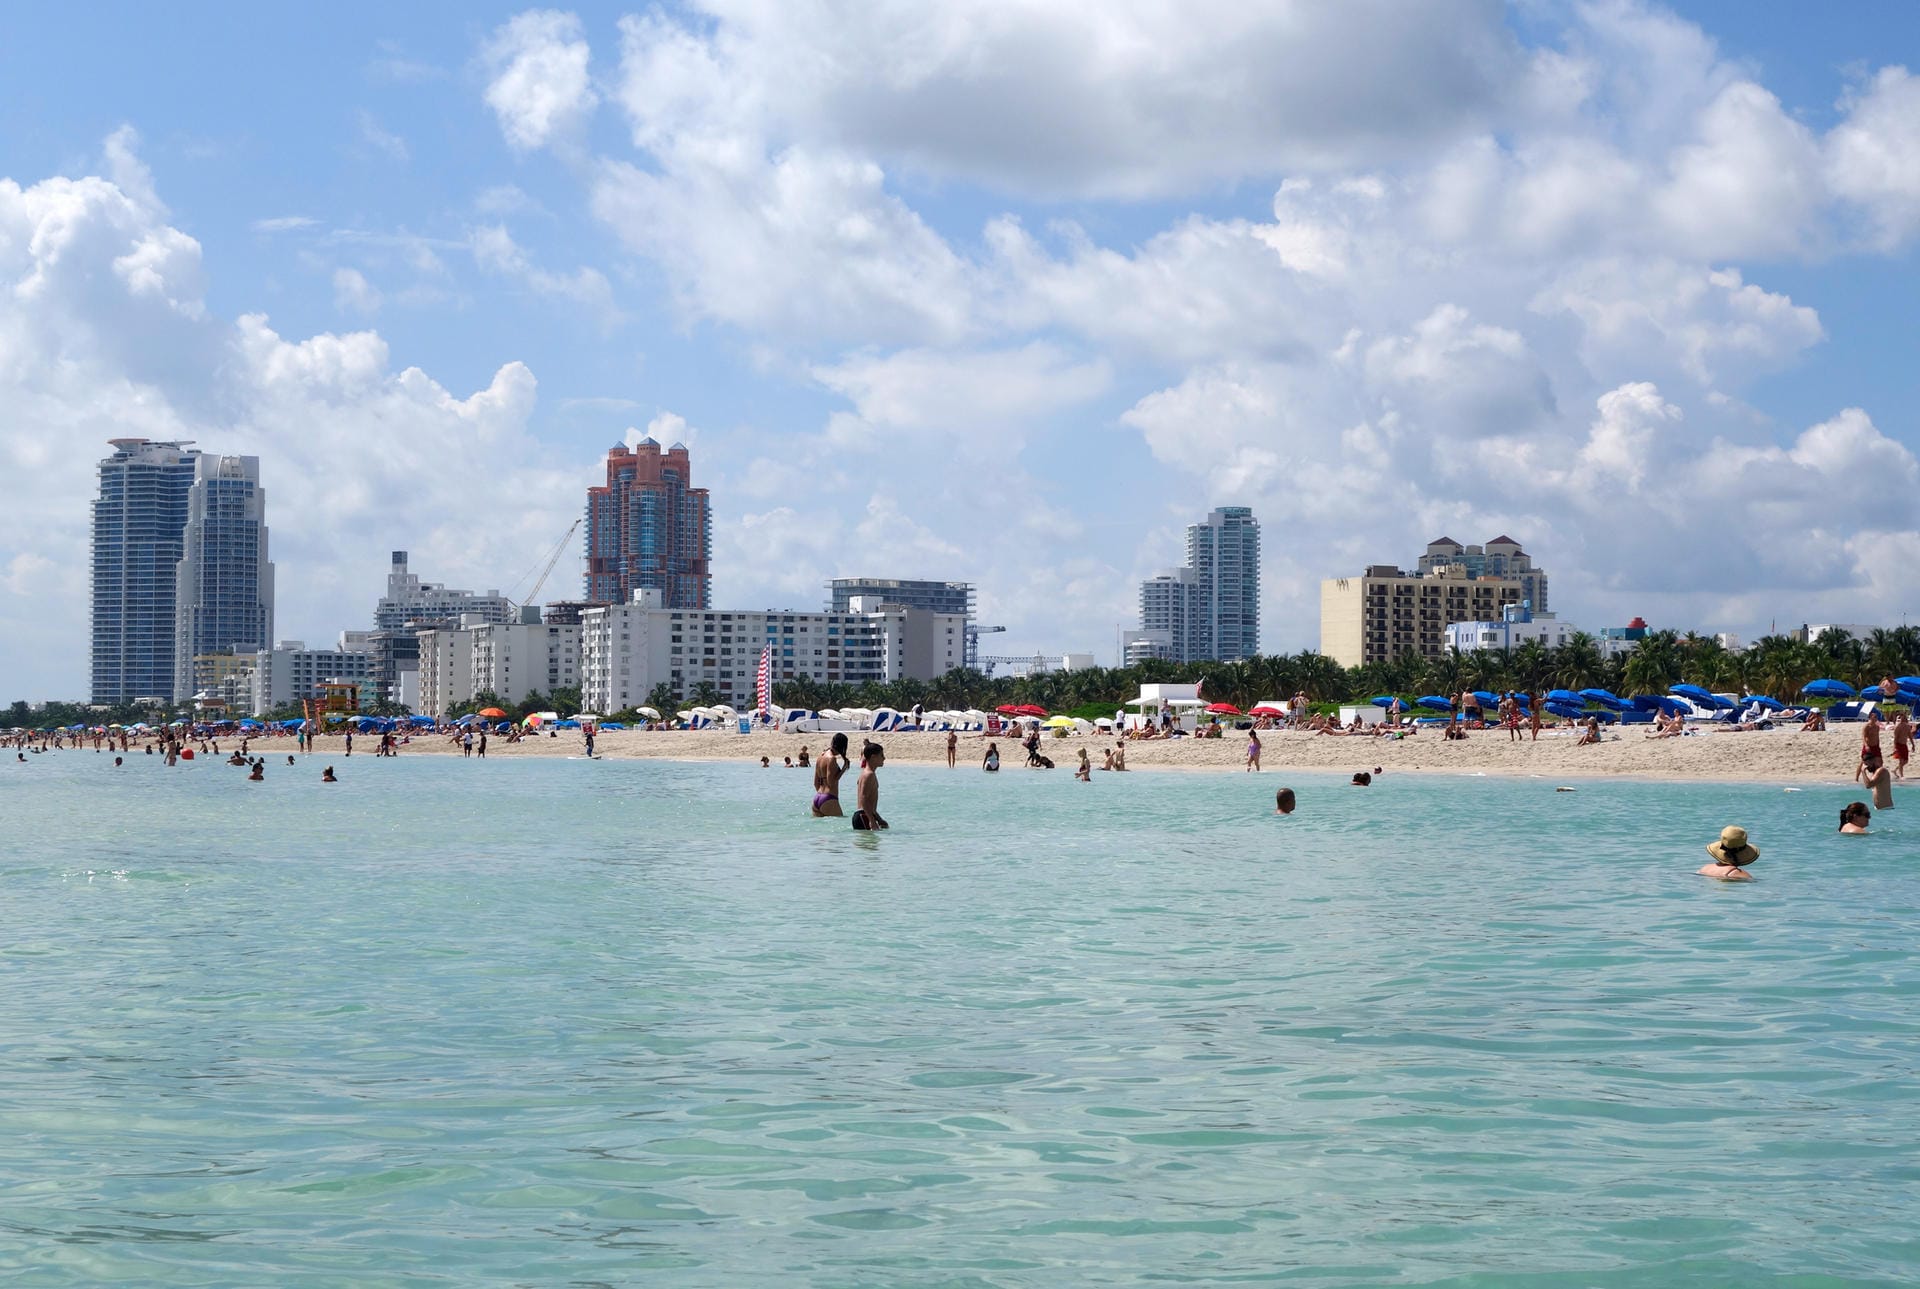 Miami in Florida ist eine Empfehlung des "Lonely Planet" für Städtereisende im kommenden Jahr.